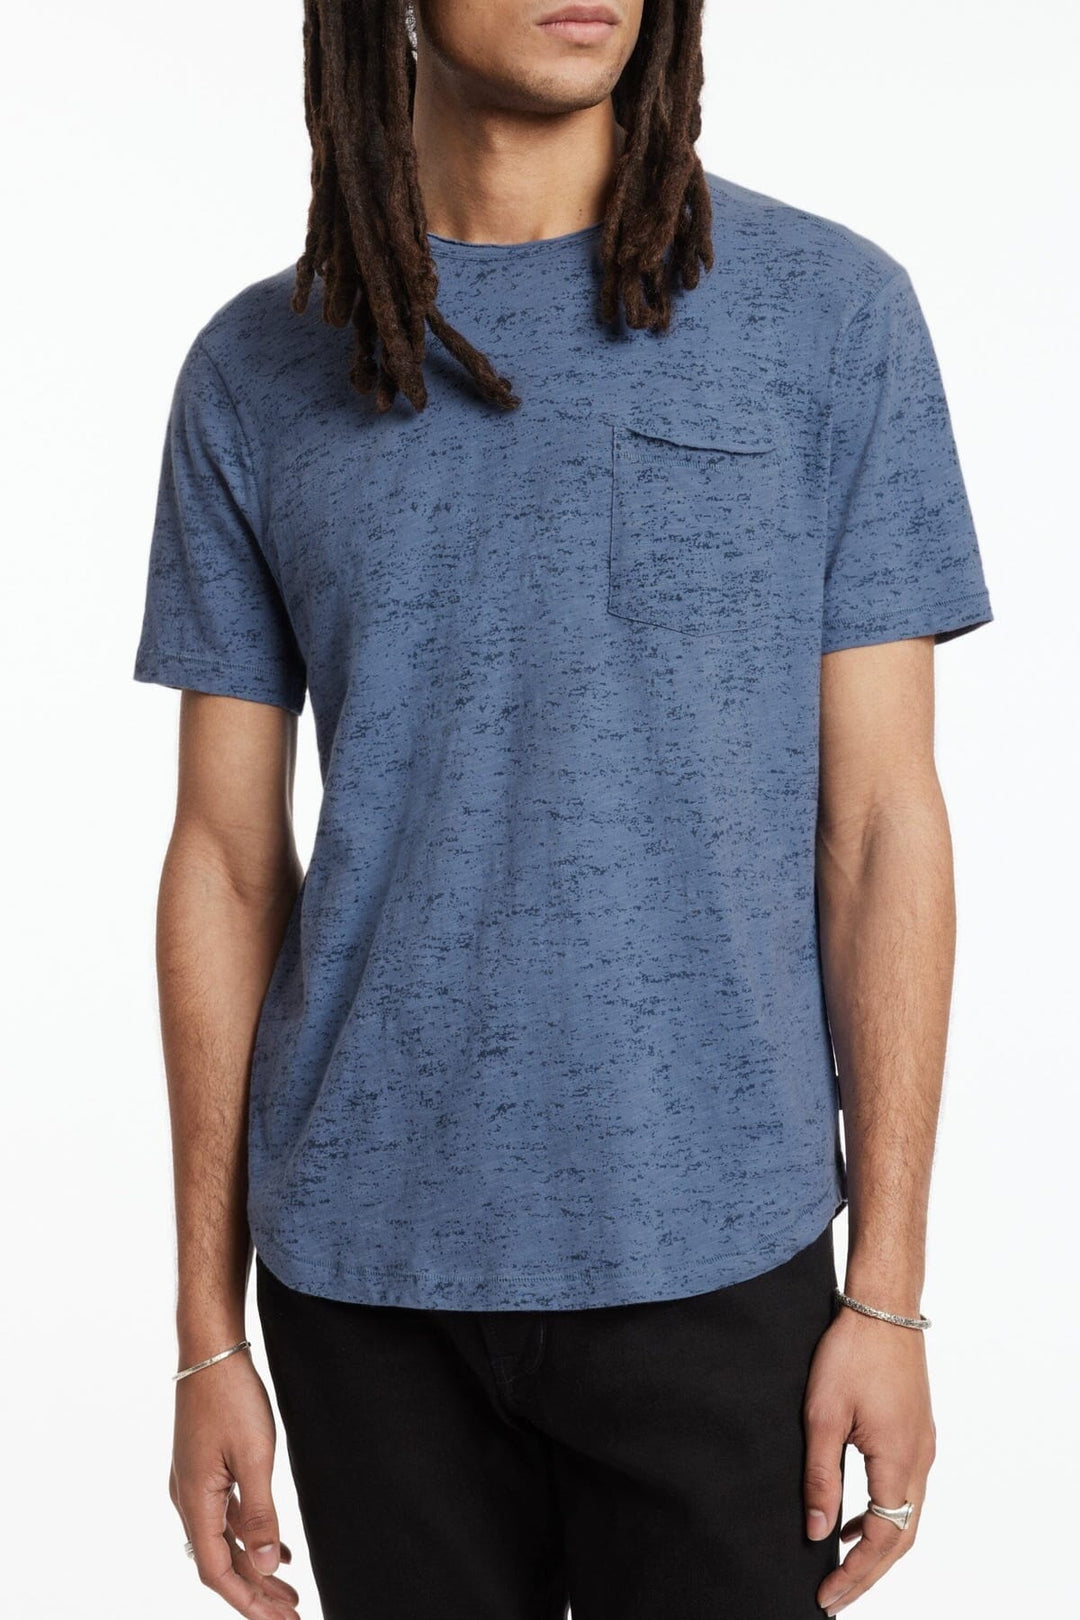 T-shirt Cooper John Varvatos Star USA XS Bleu 